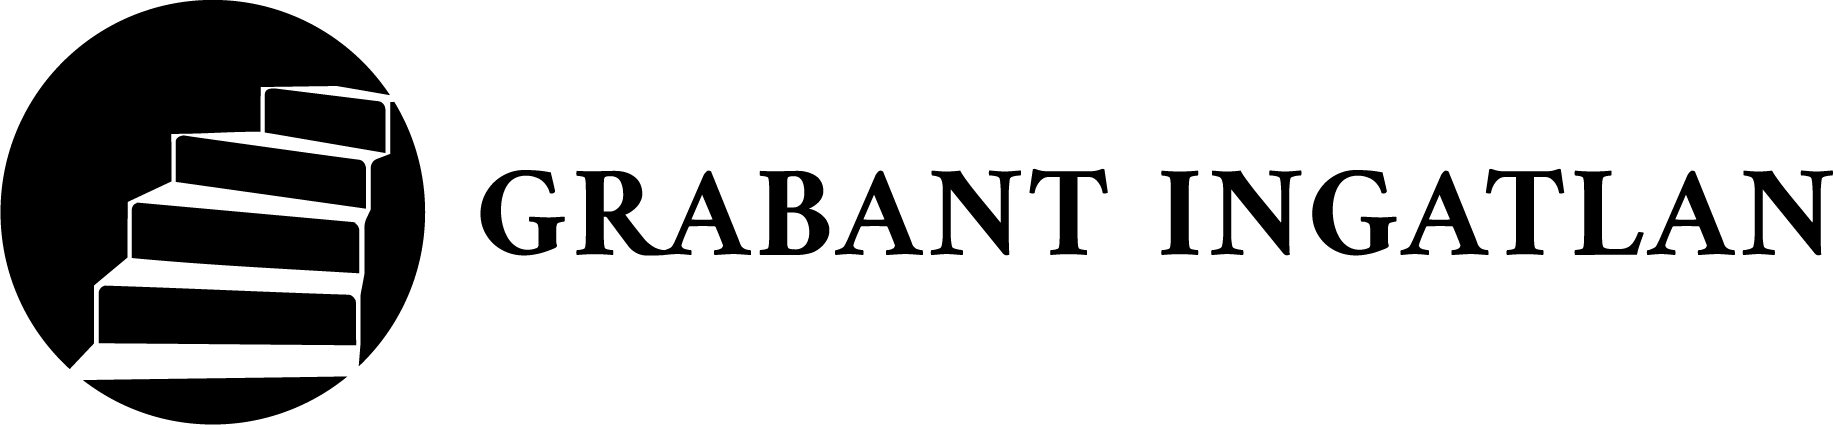 GRABANT INGATLAN logo